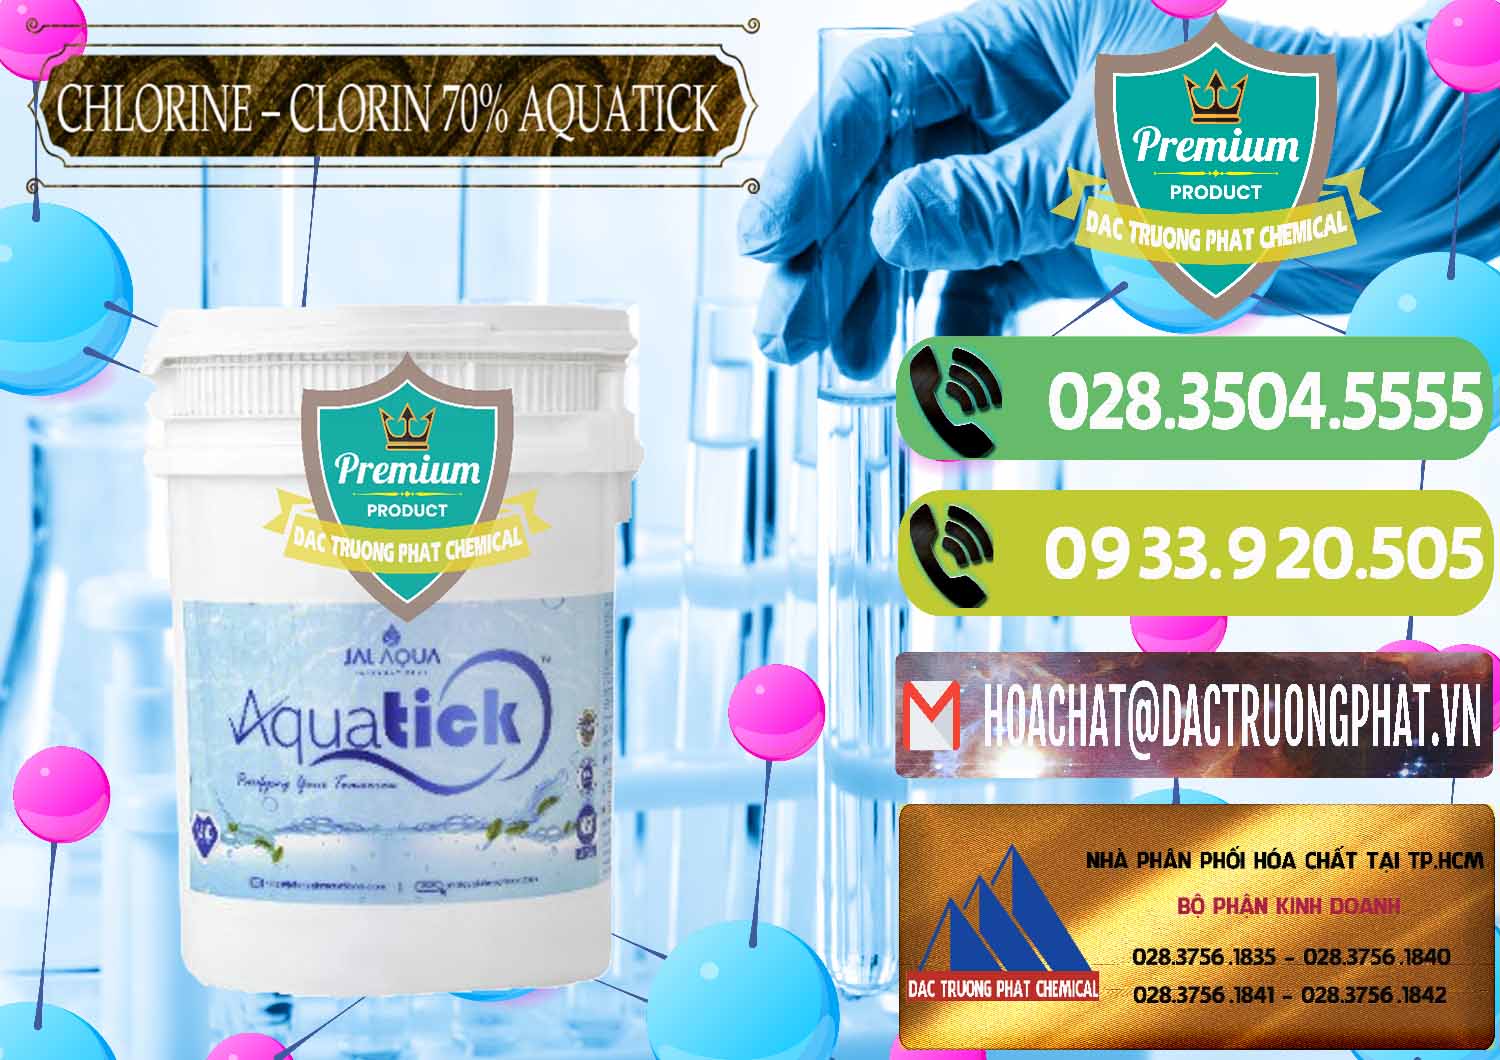 Đơn vị chuyên bán & cung ứng Chlorine – Clorin 70% Aquatick Thùng Cao Jal Aqua Ấn Độ India - 0237 - Nhập khẩu & cung cấp hóa chất tại TP.HCM - hoachatmientay.vn